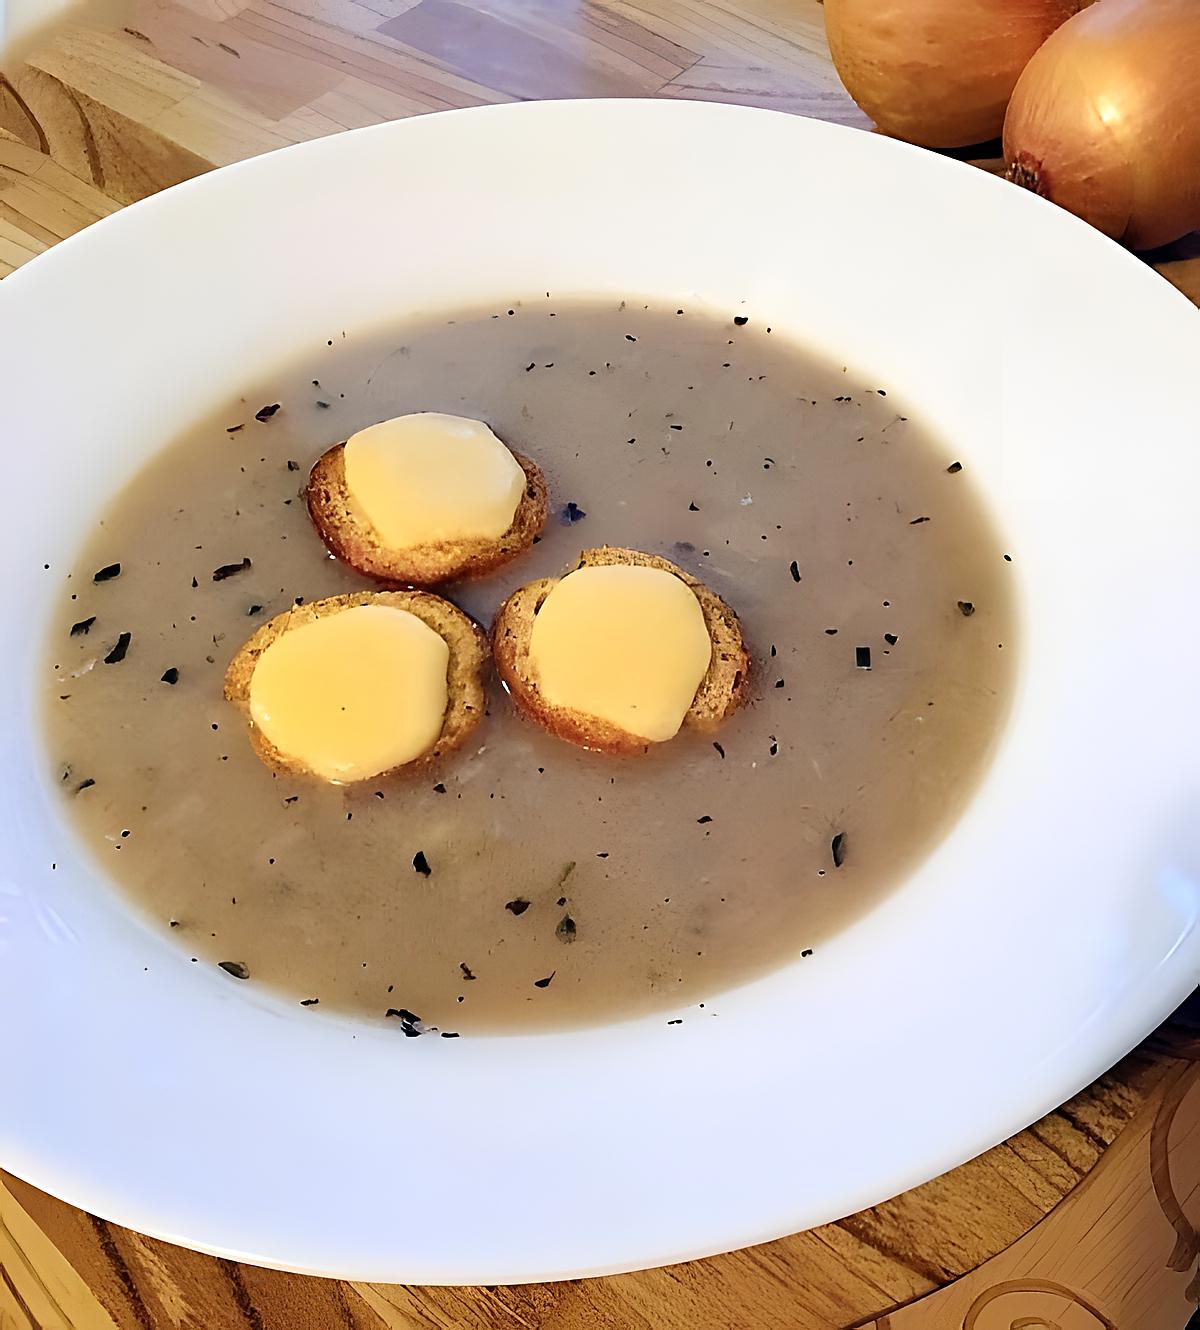 recette Soupe à l'oignon